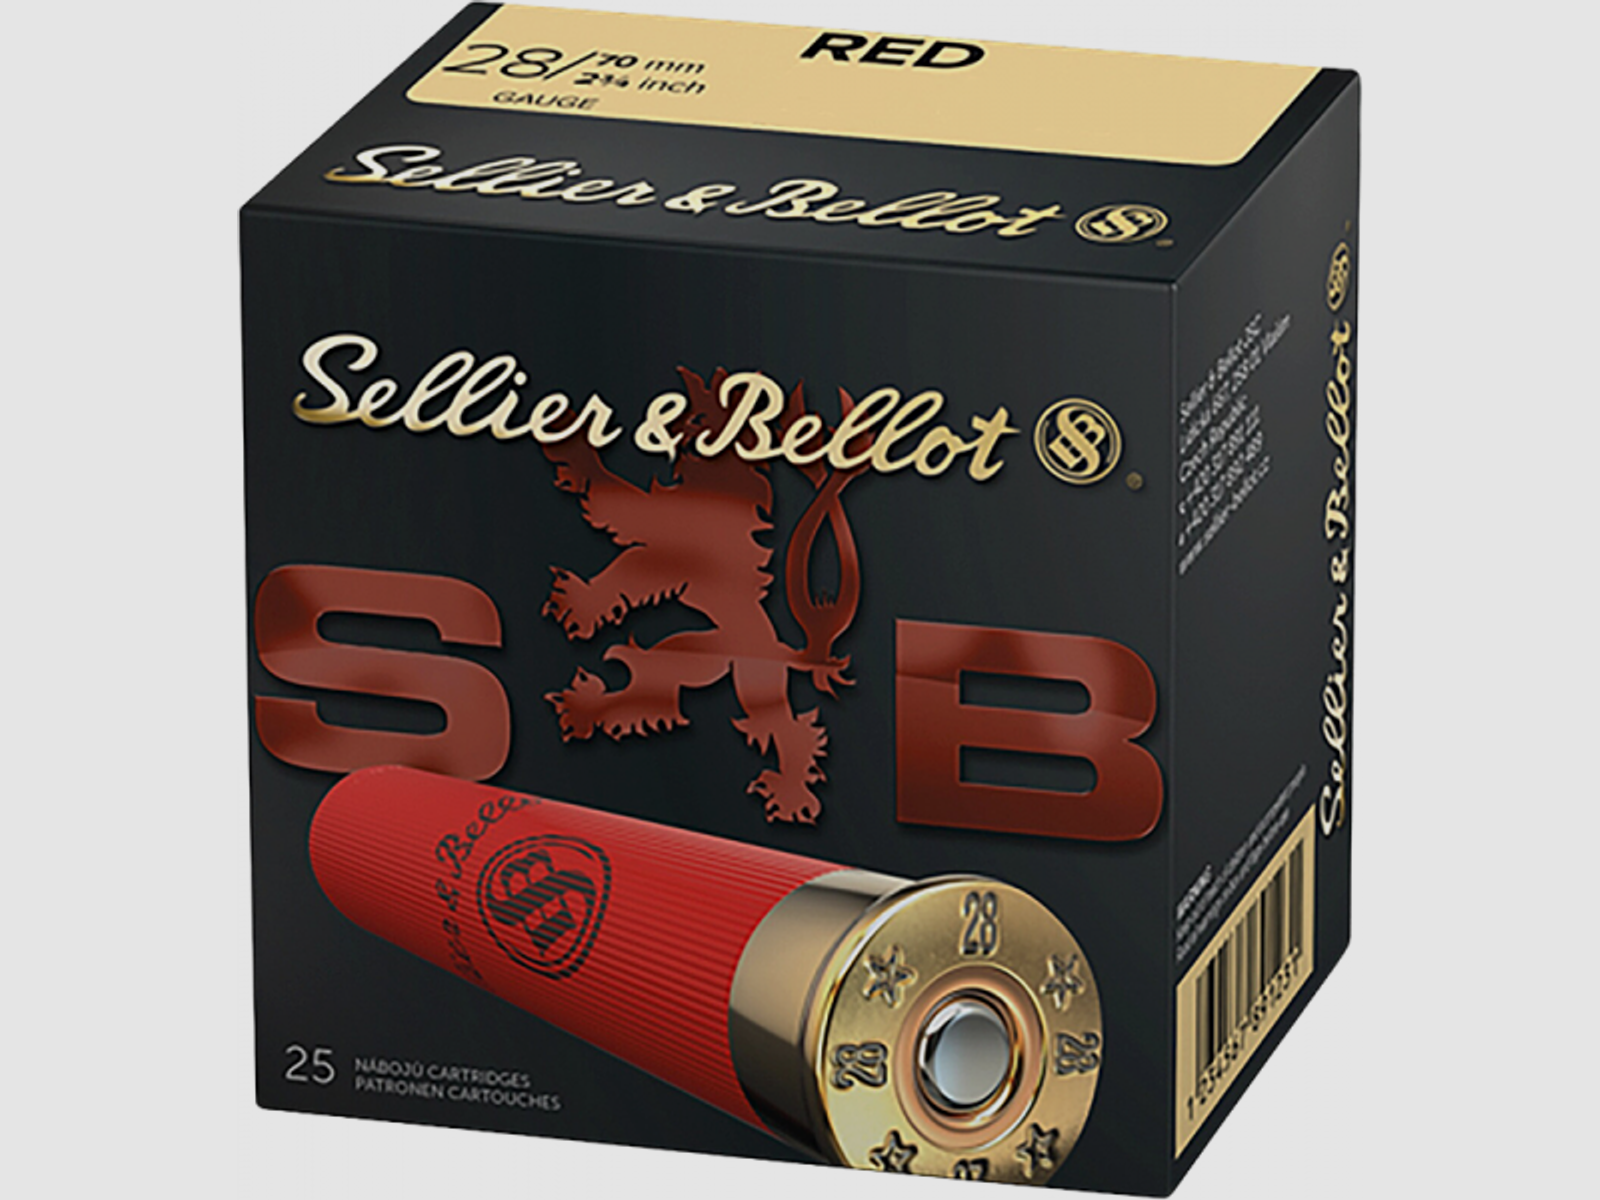 Sellier & Bellot Red 28/70 21 gr Schrotpatronen